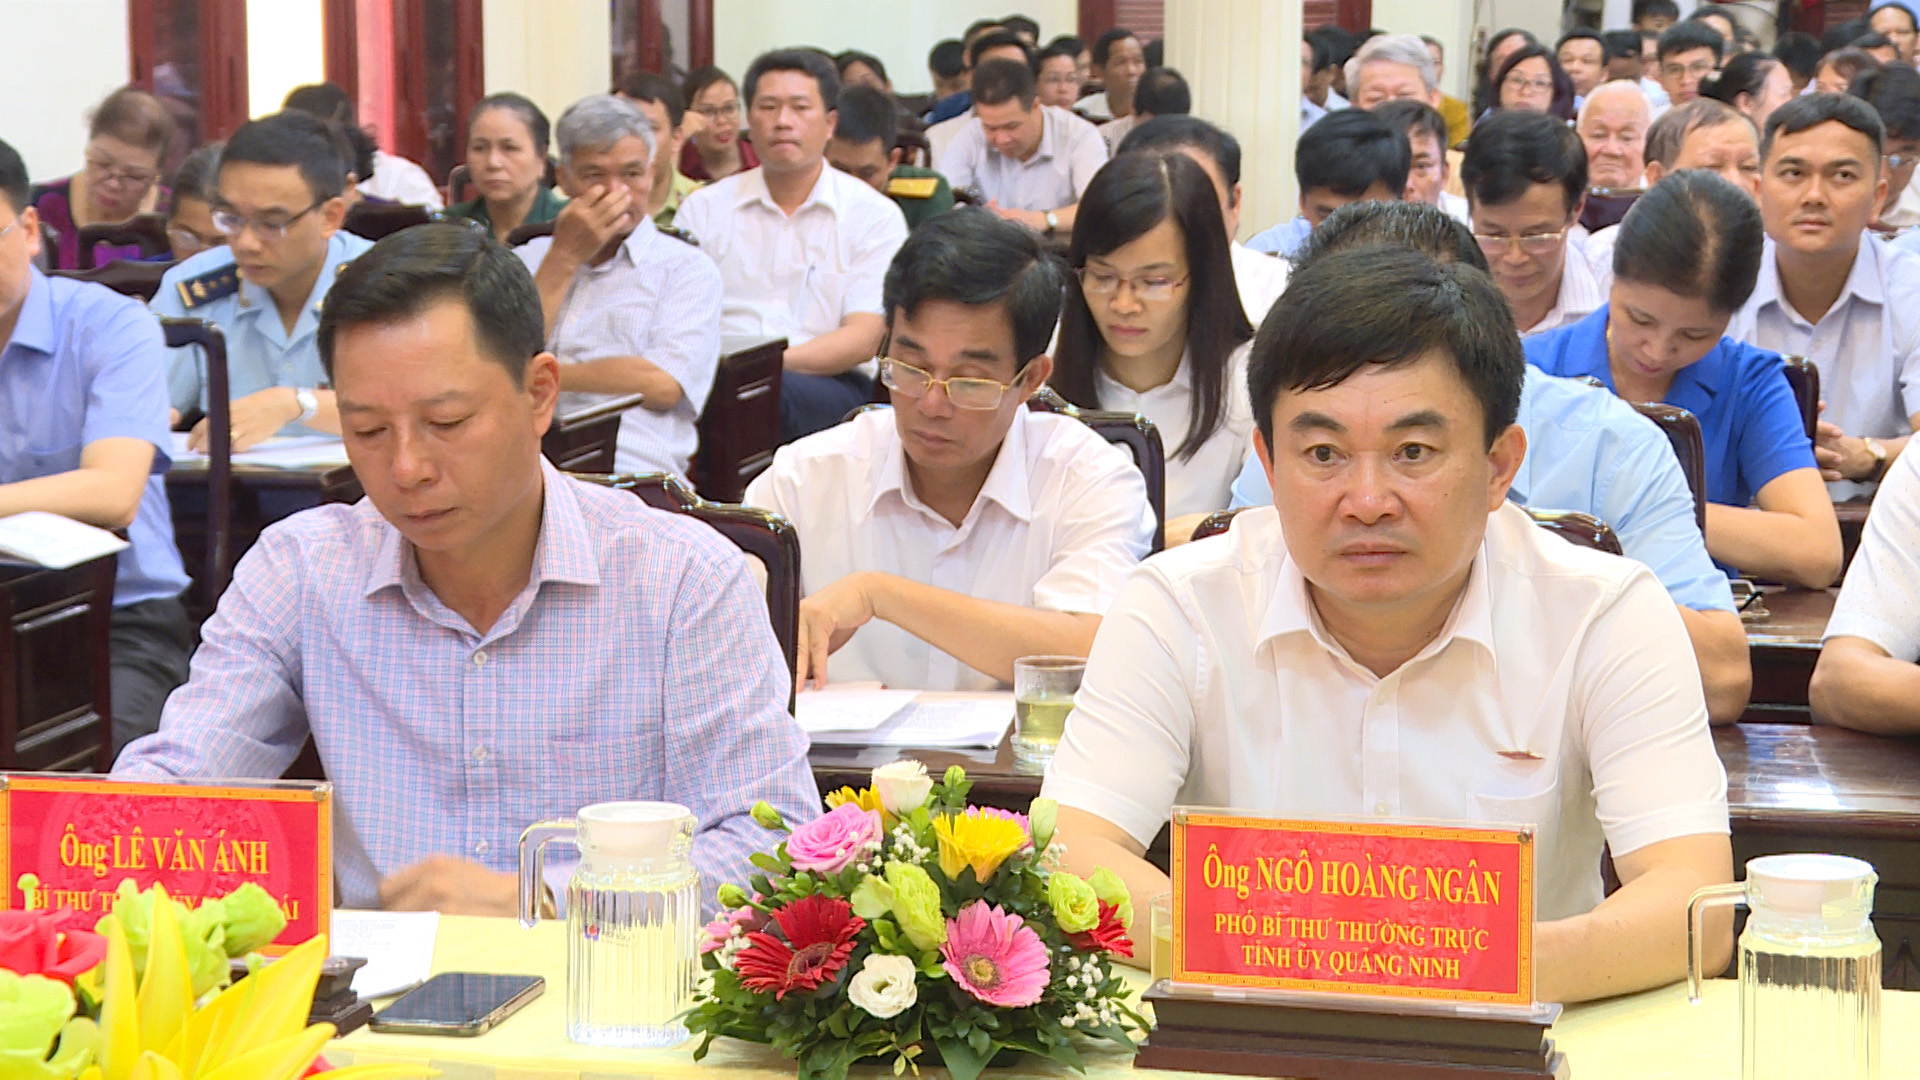 Đồng chí Ngô Hoàng Ngân, Phó Bí thư Thường trứcTỉnh ủy dự buổi tiếp xúc cử tri tại TP Móng Cái.